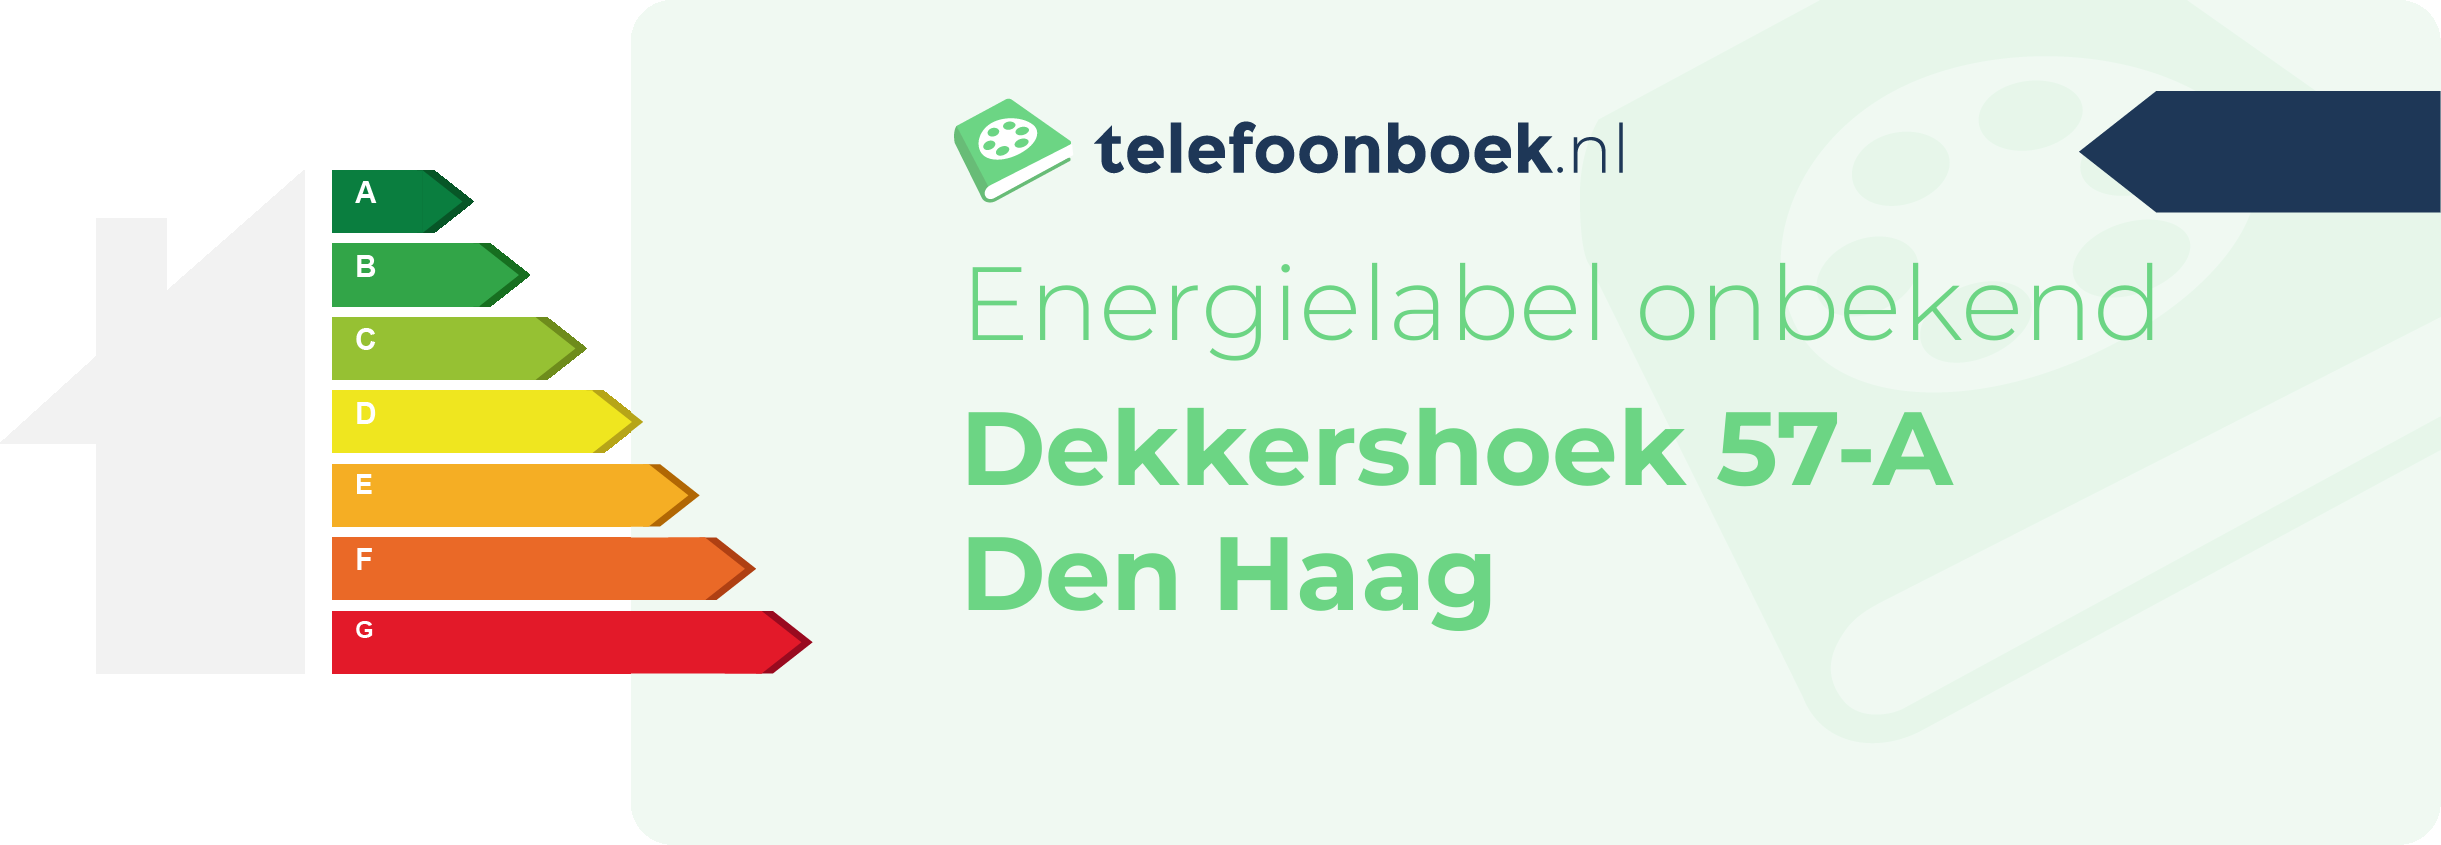 Energielabel Dekkershoek 57-A Den Haag